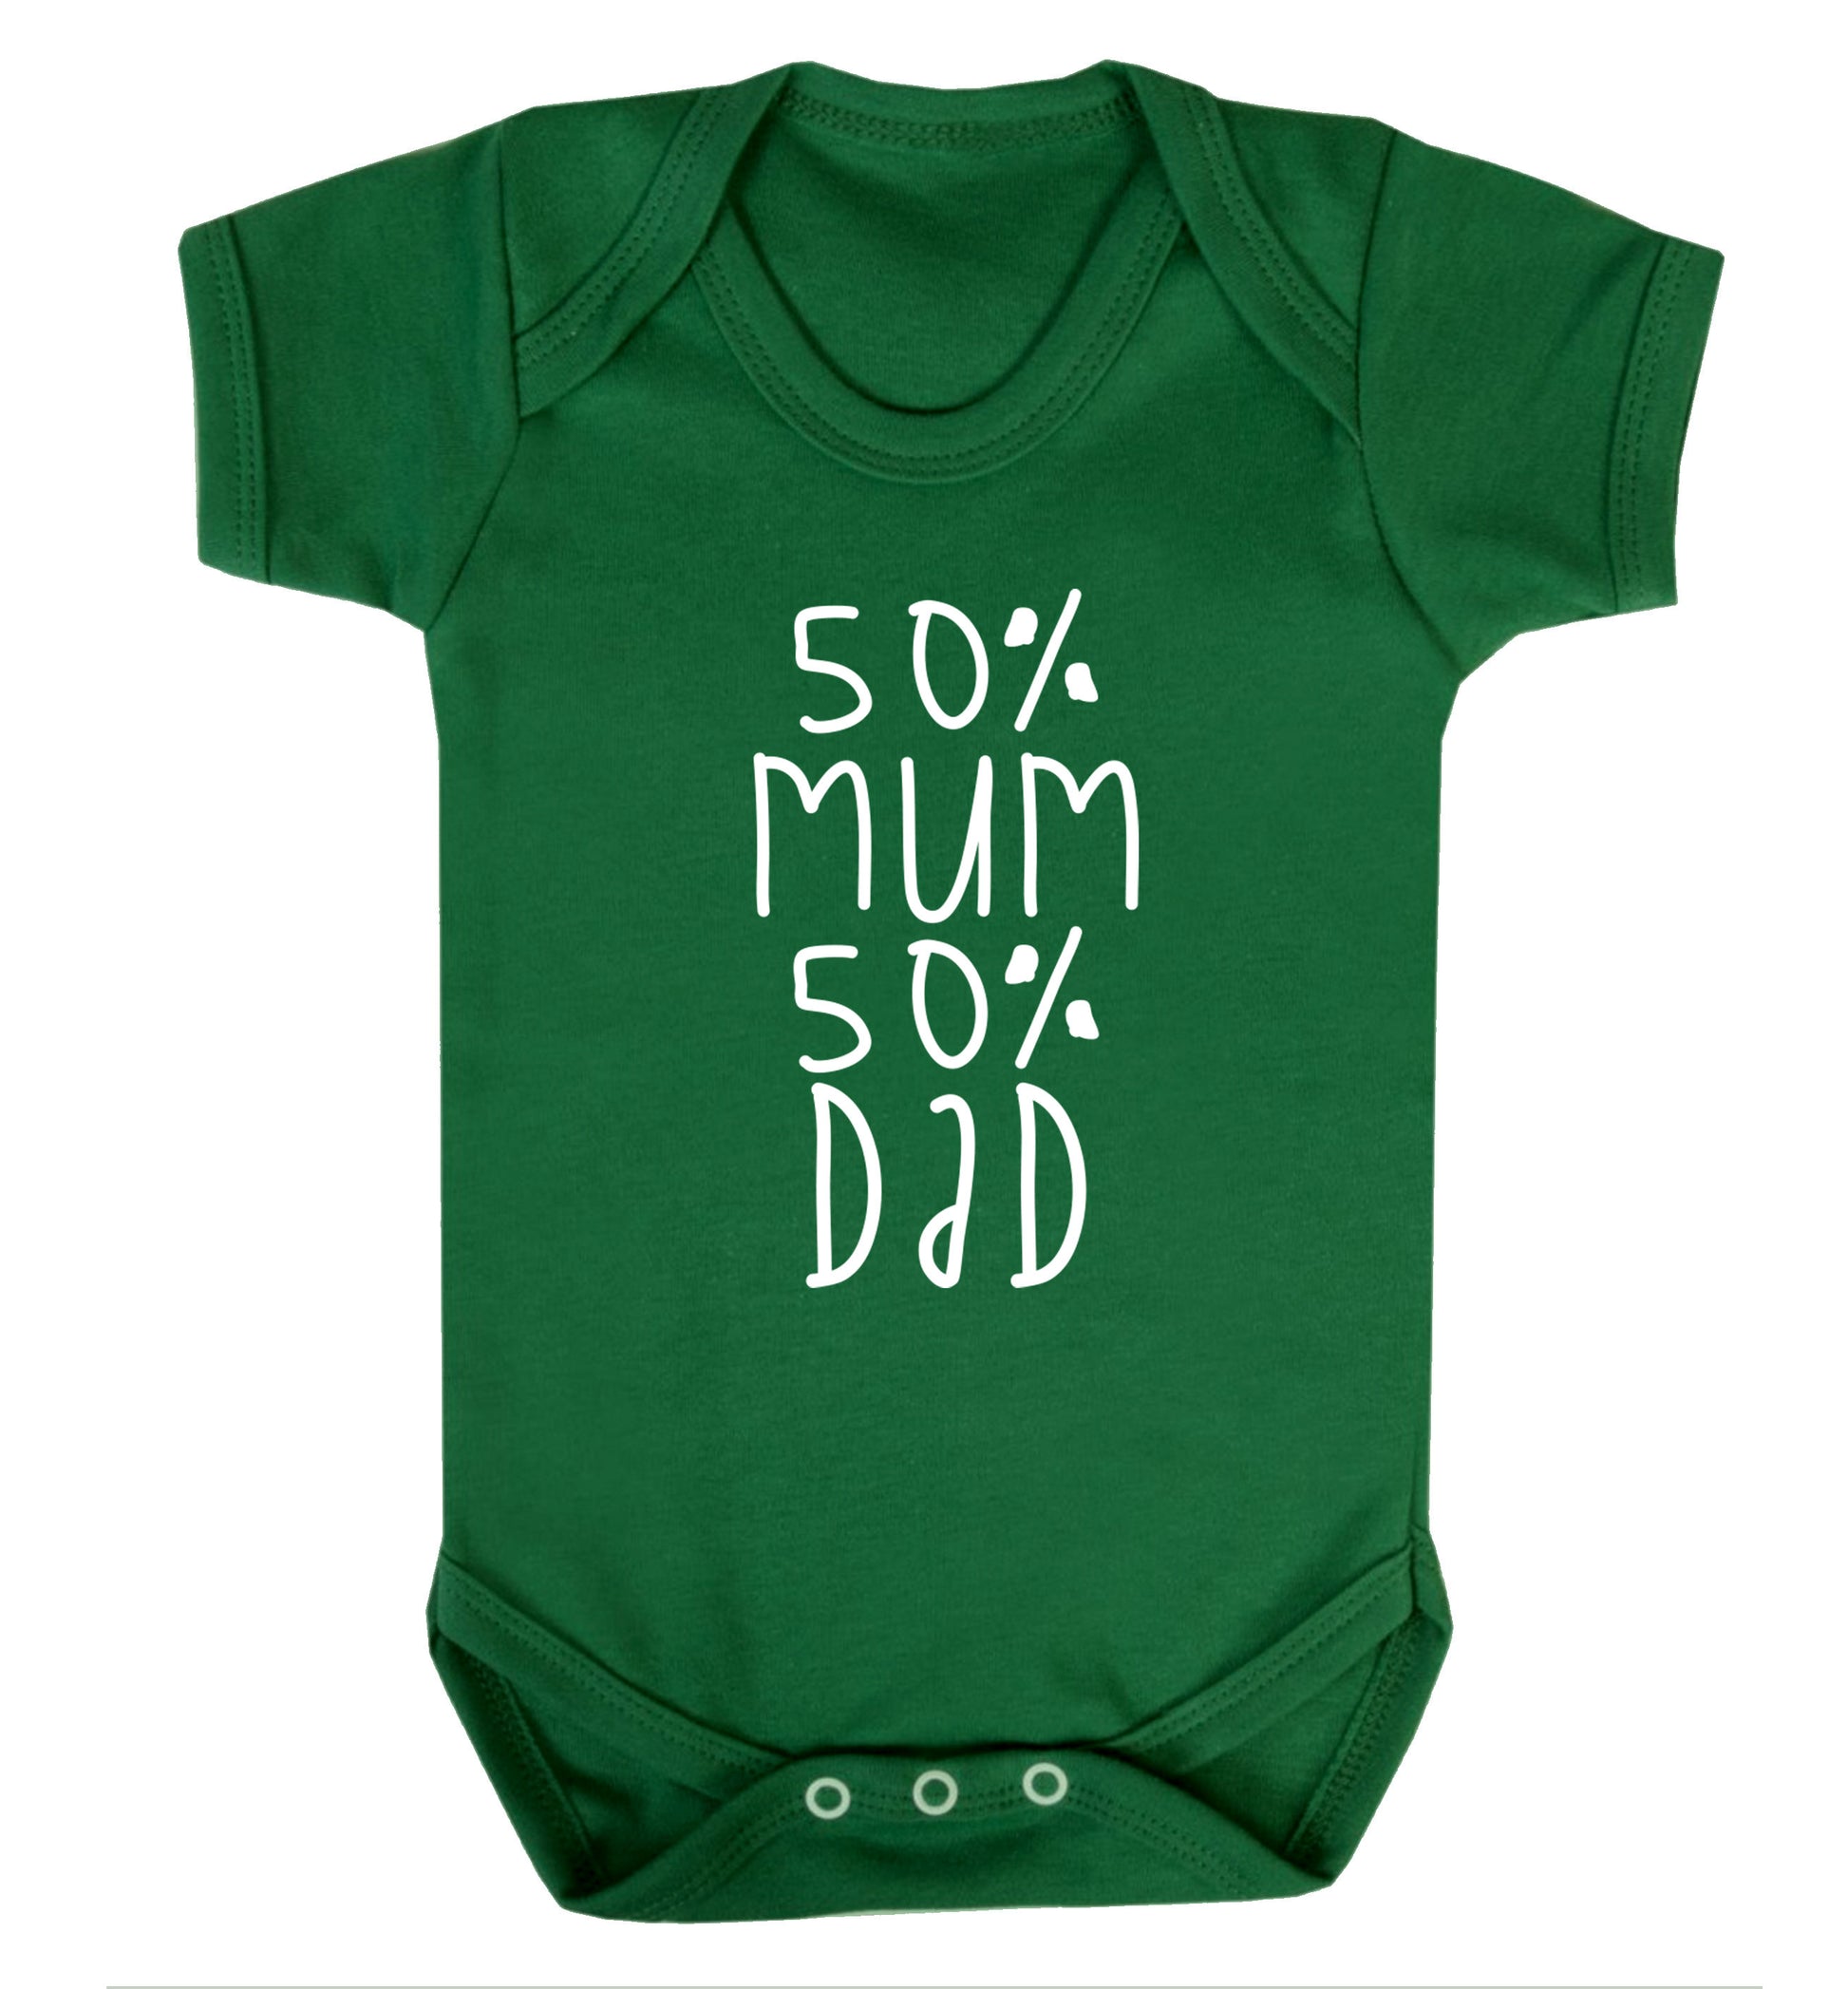 50% mum 50% dad Baby Vest green 18-24 months